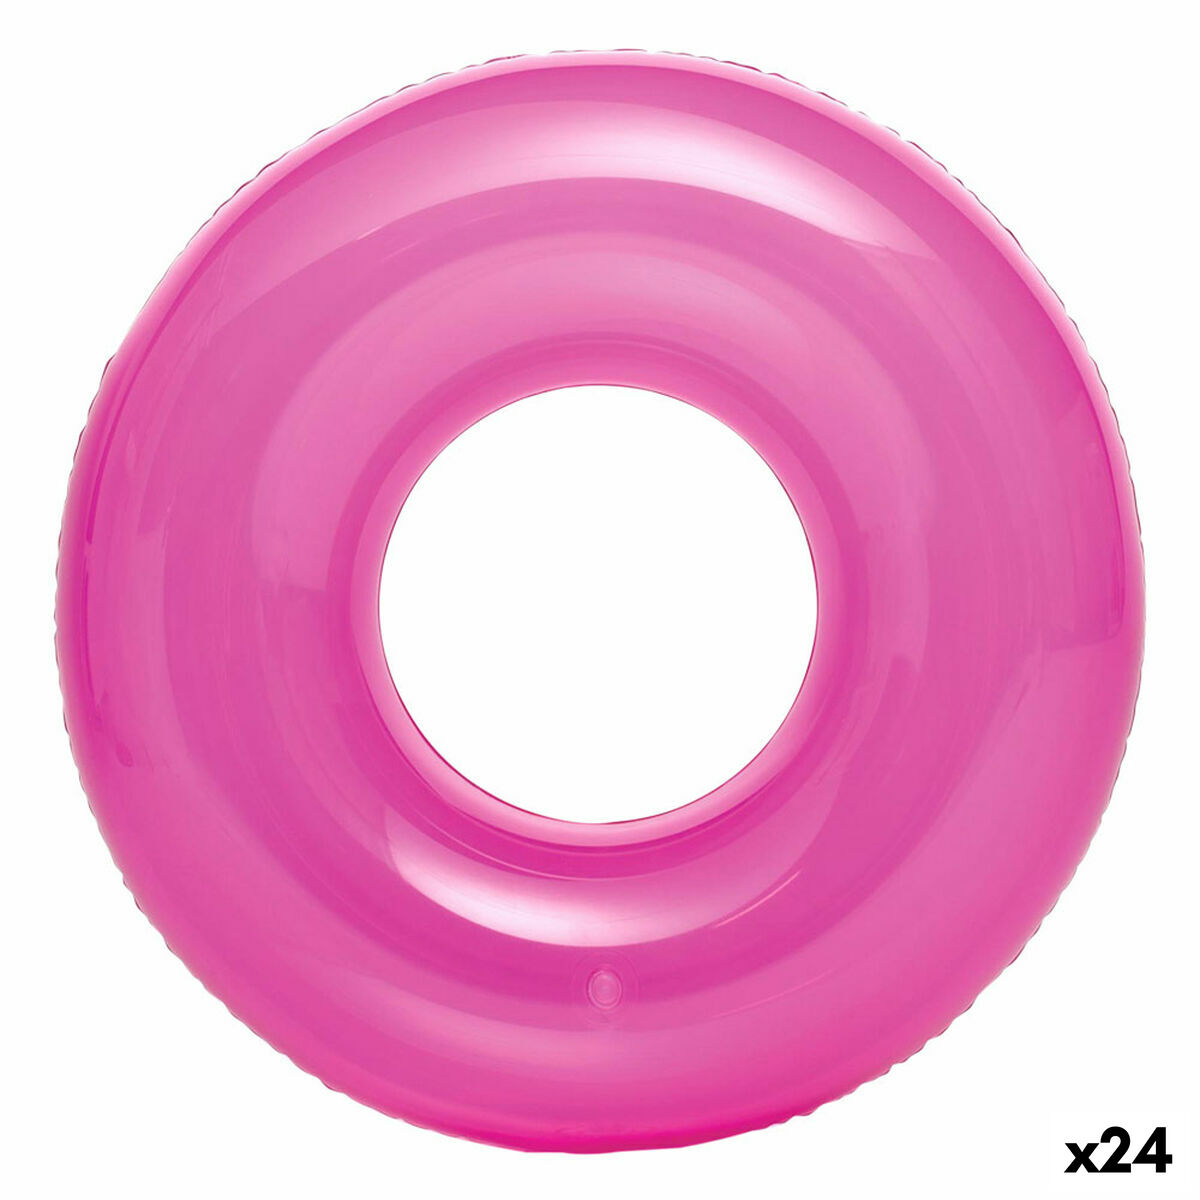 Salvagente Gonfiabile Donut Intex 76 x 76 cm (24 Unità) - Disponibile in 3-4 giorni lavorativi